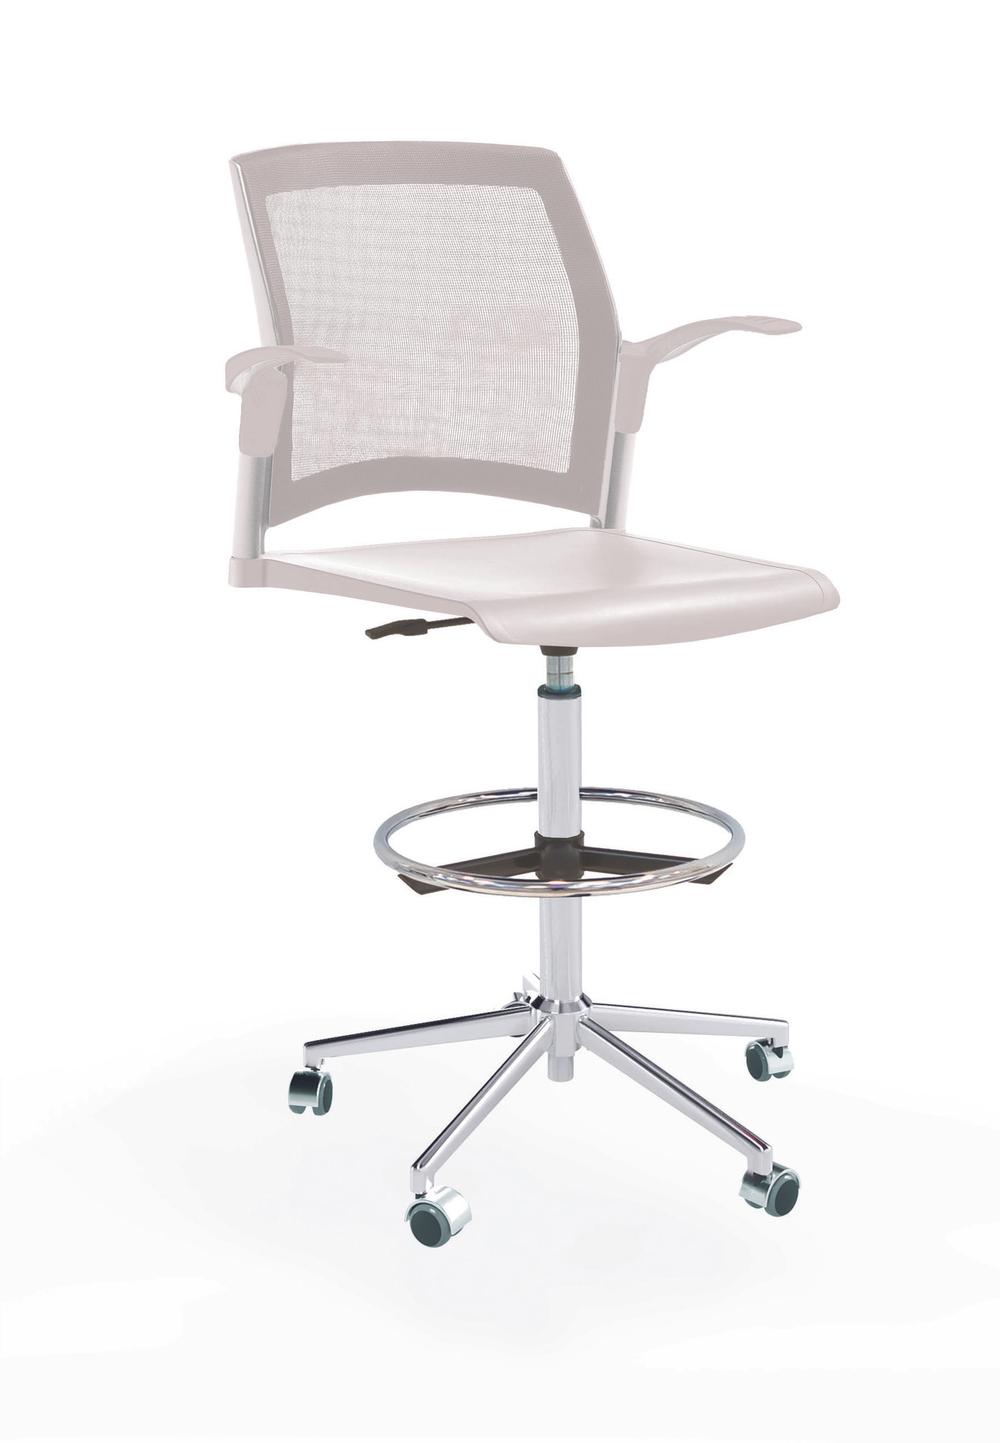 Кресло Rewind каркас хром, пластик белый, база стальная хромированная, с открытыми подлокотниками, сиденье без обивки, спинка-сетка